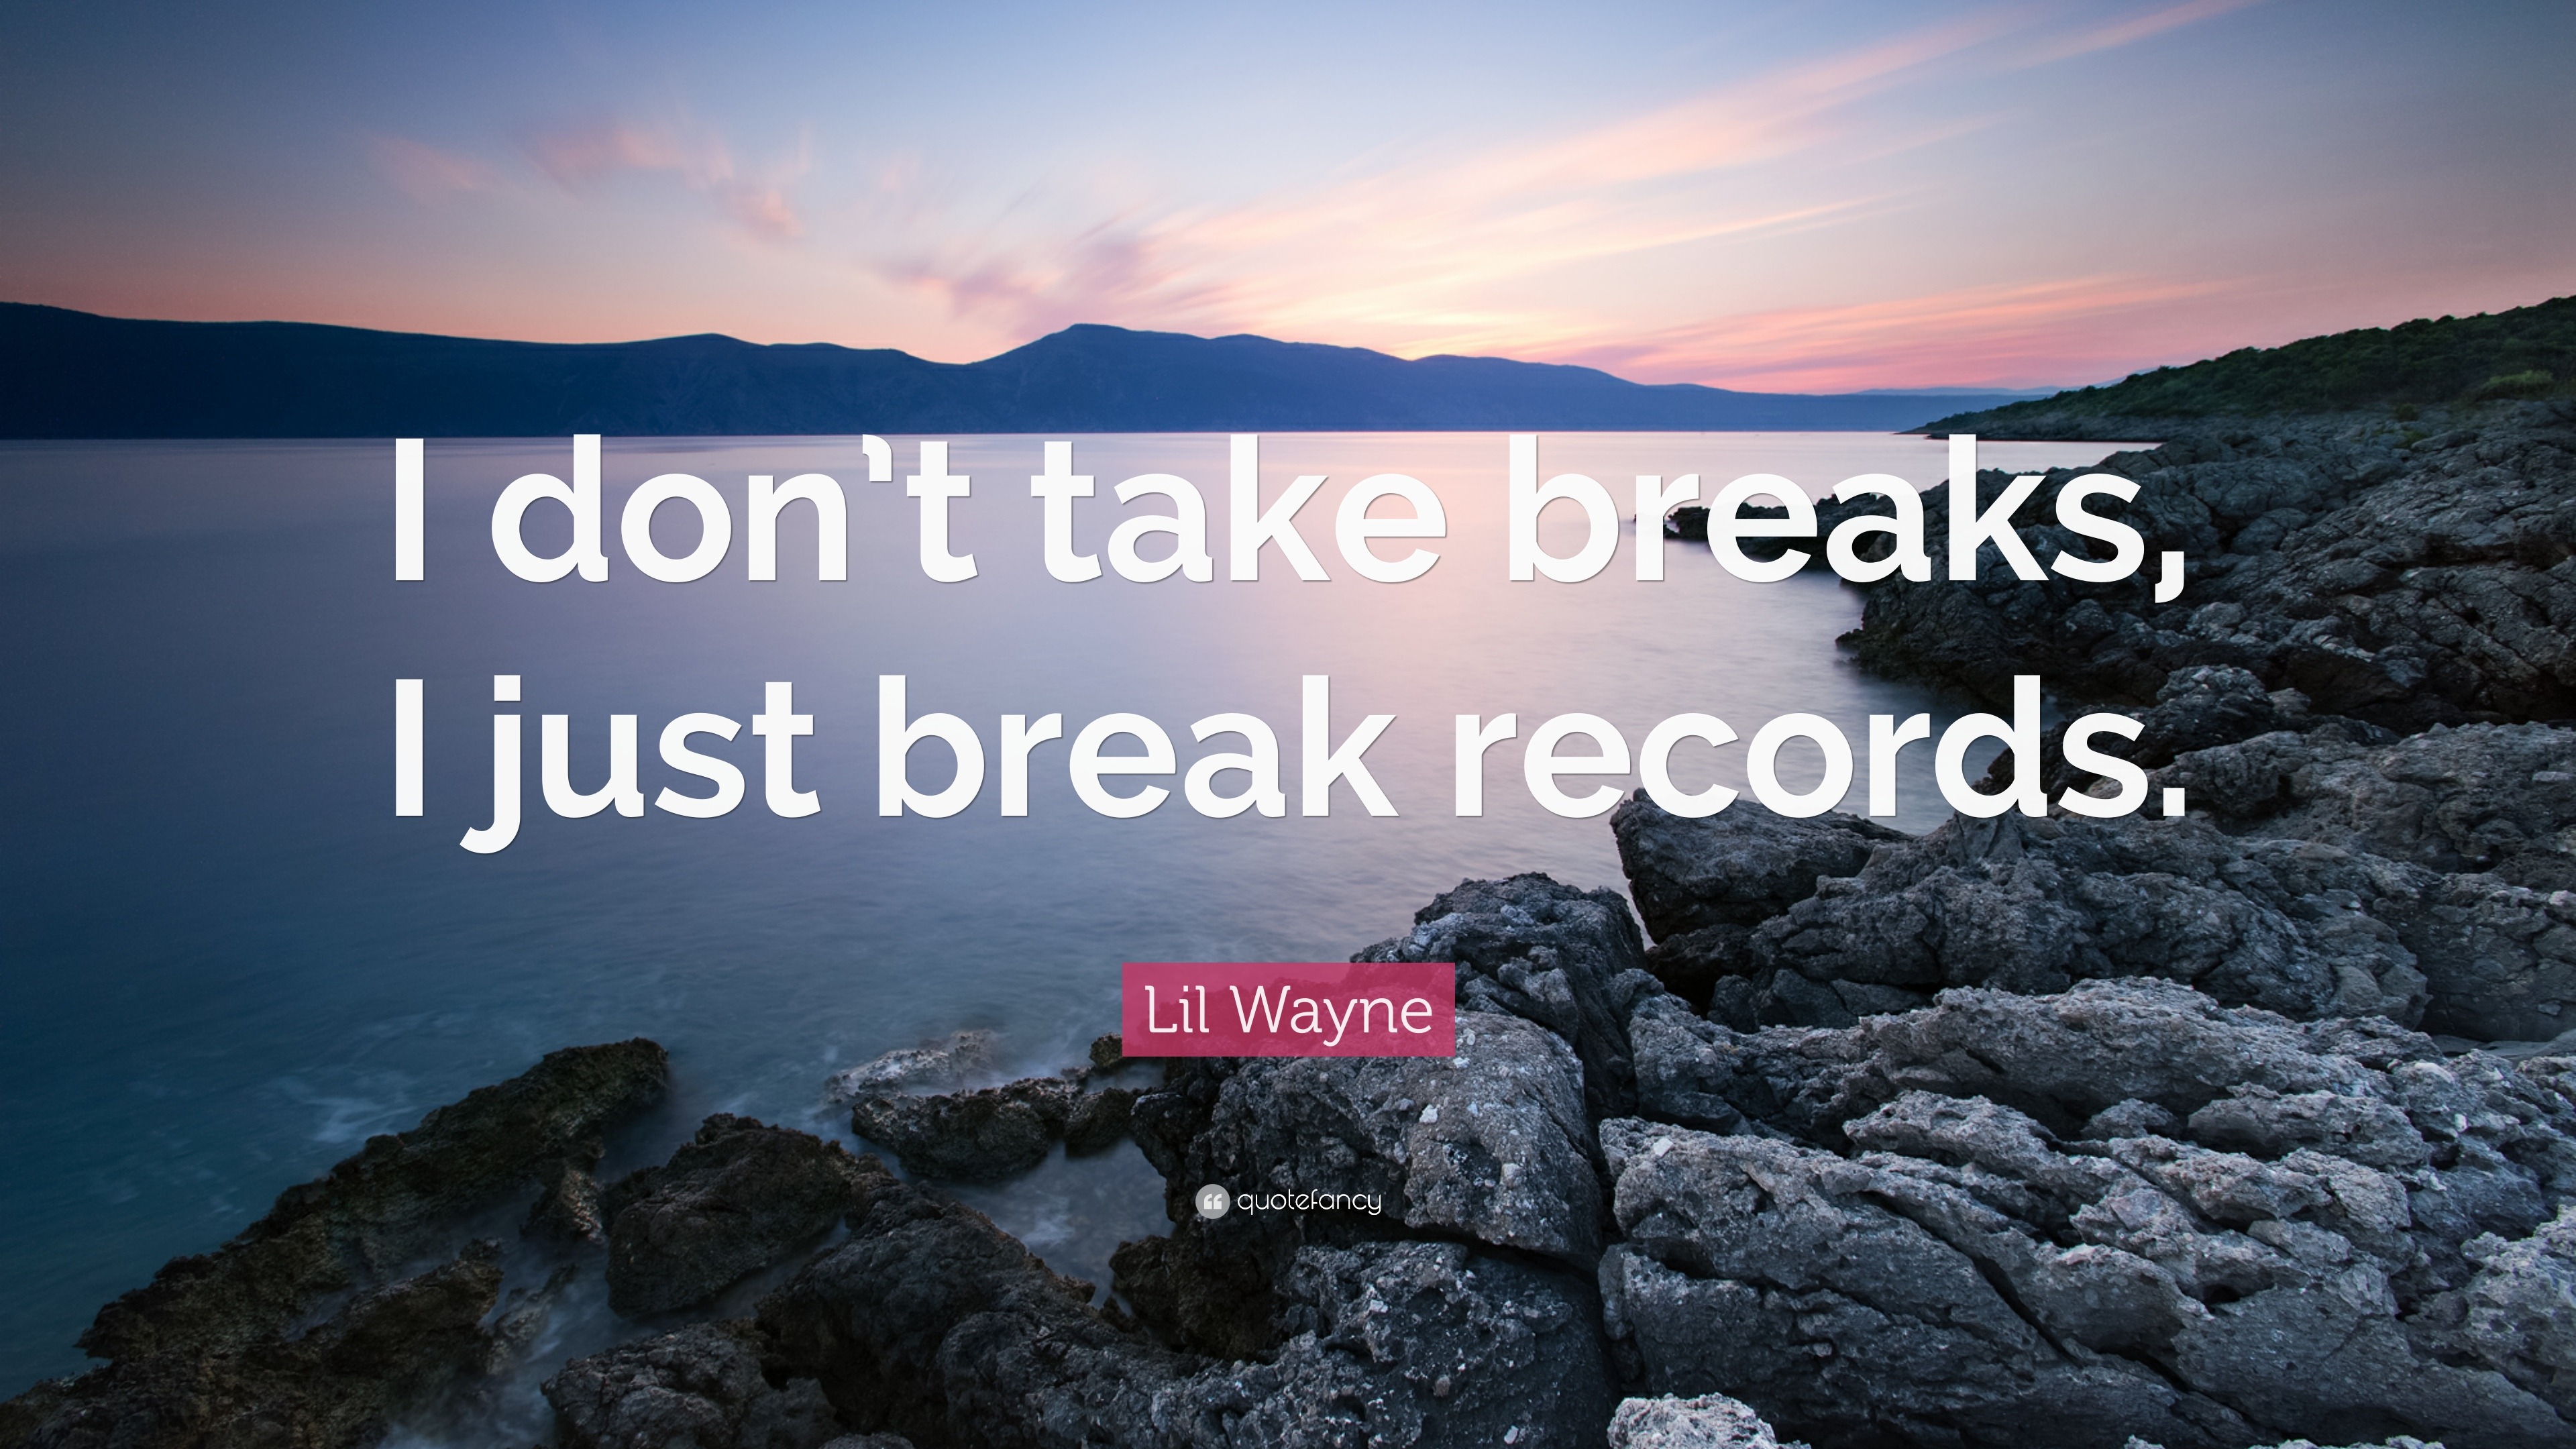 reminder to take a break